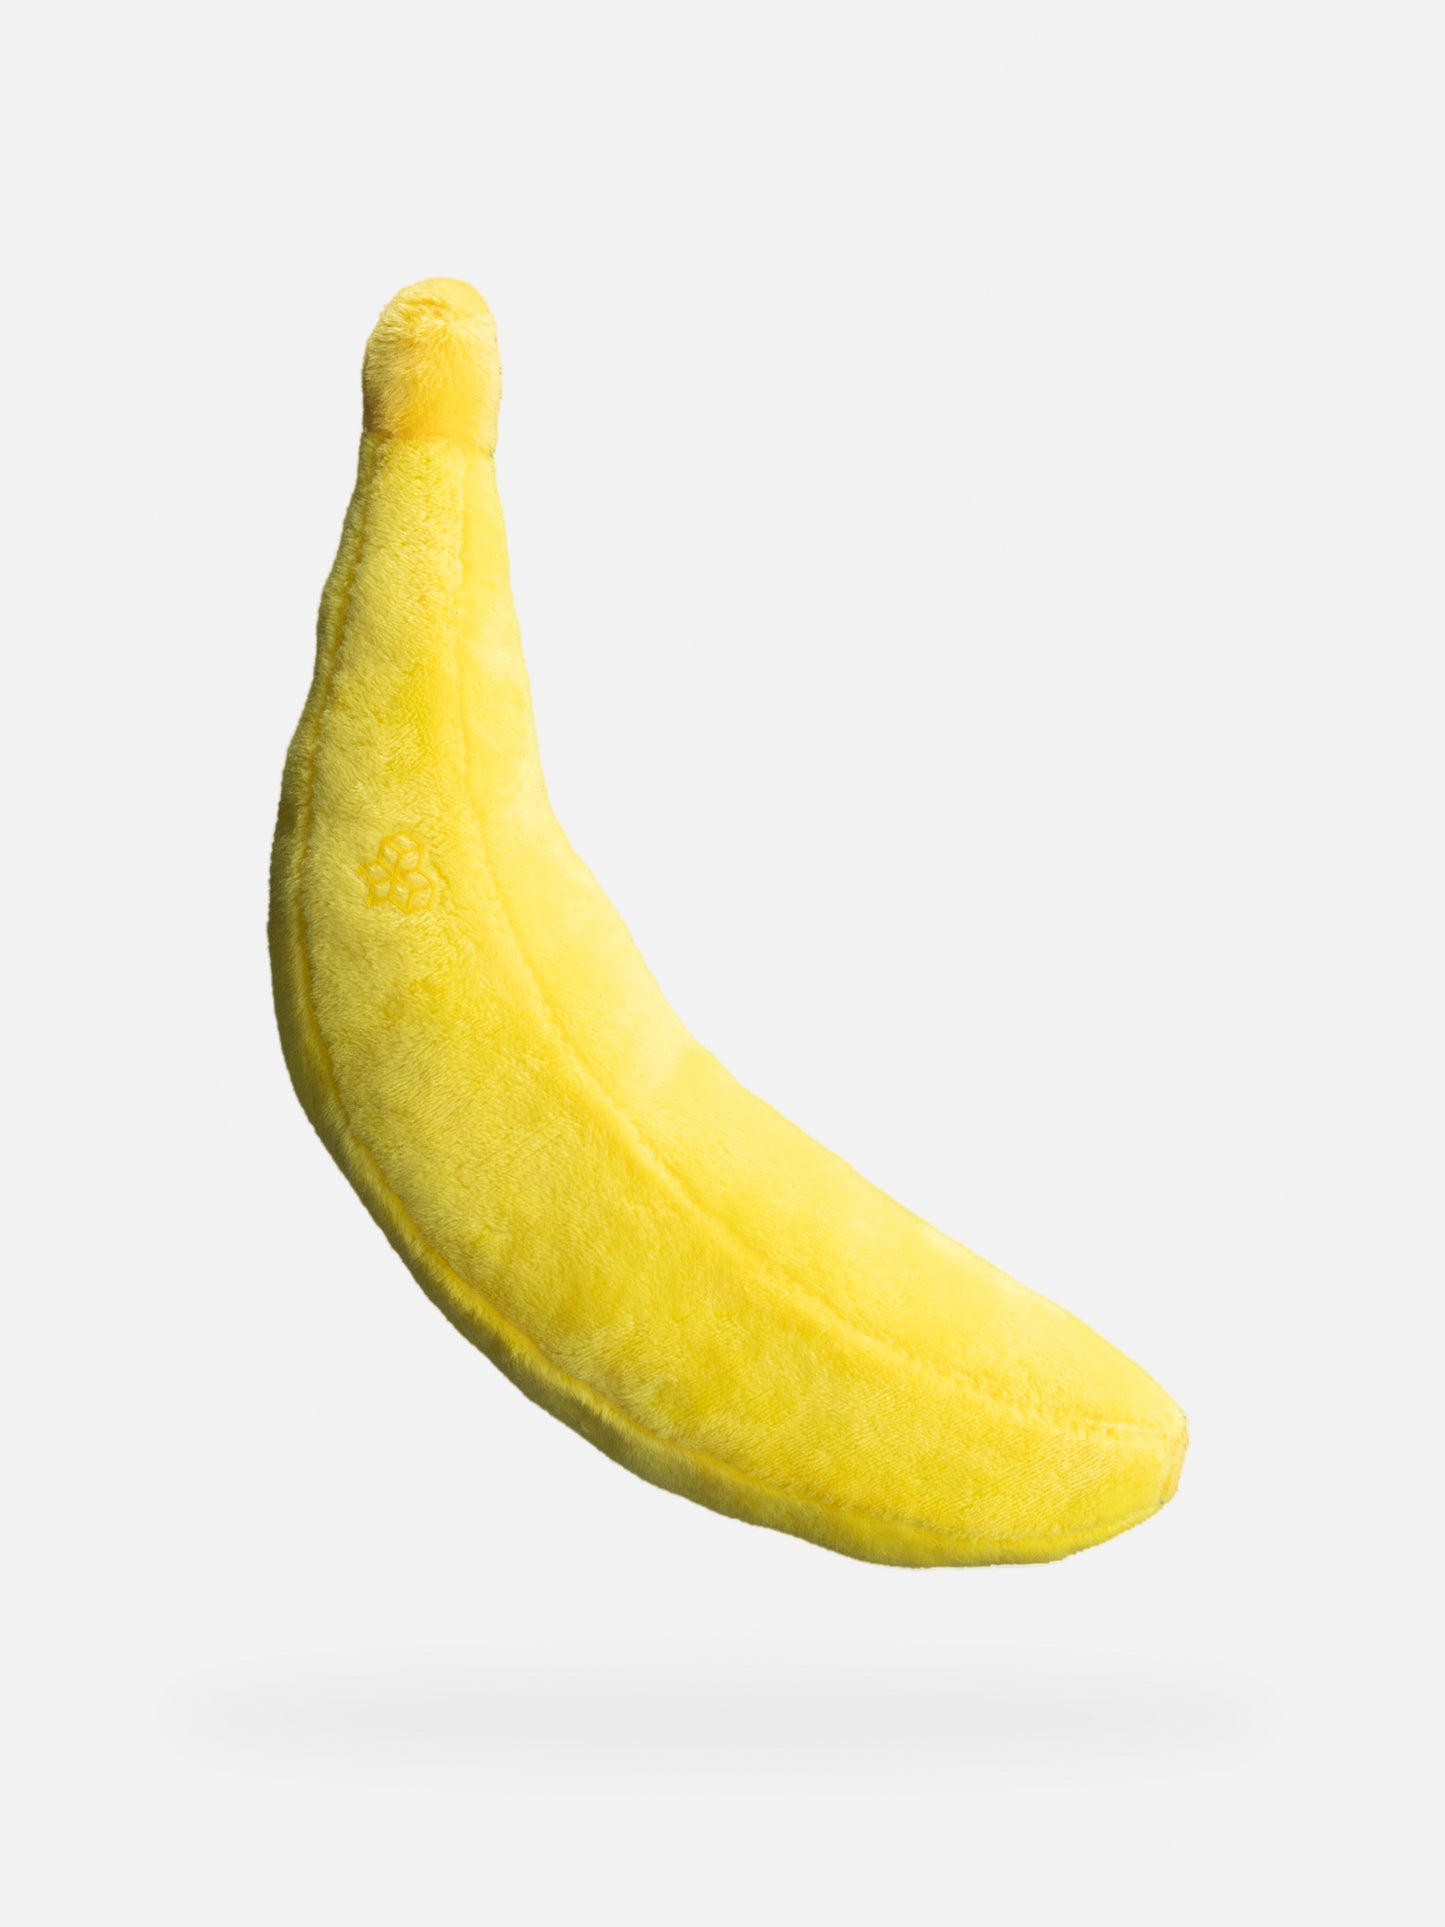 Banane pour l'échelle